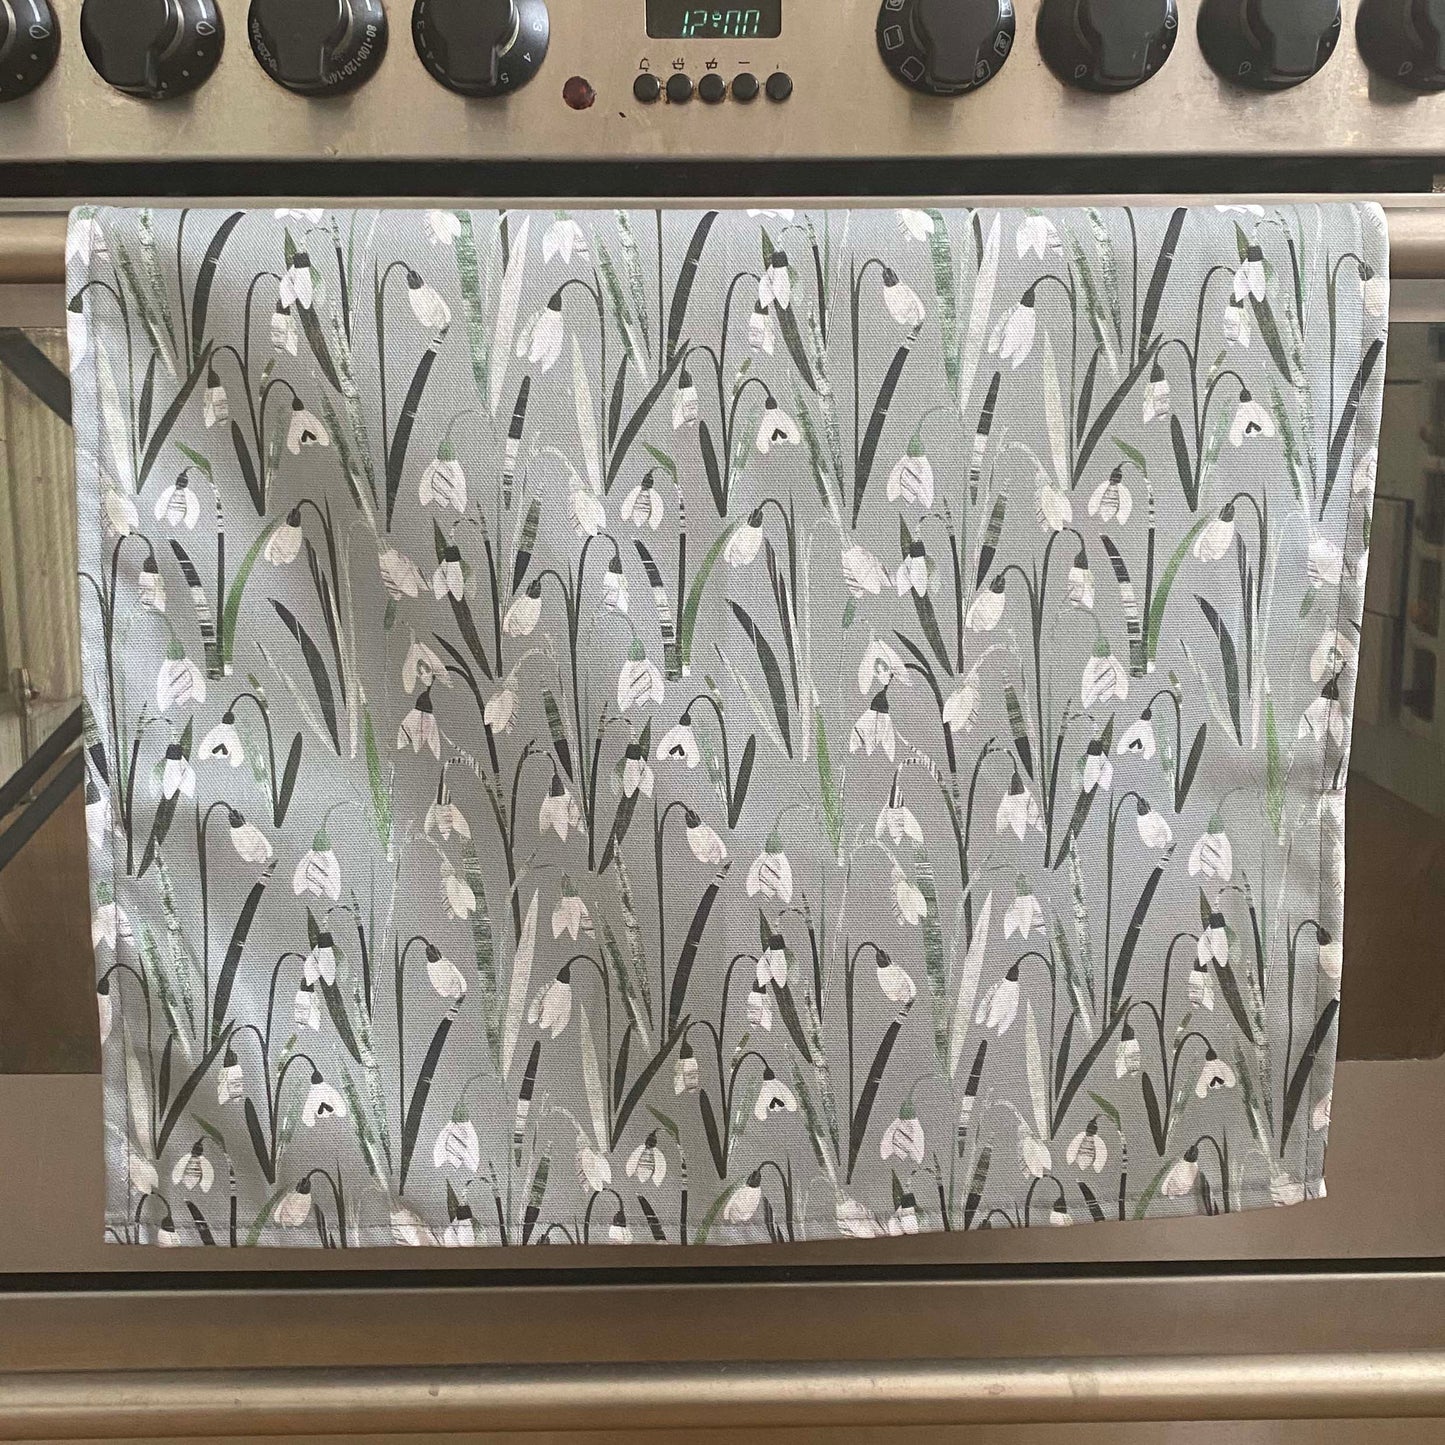 Snowdrops Tea Towel has been hung over the door of a stainless steel range cooker.